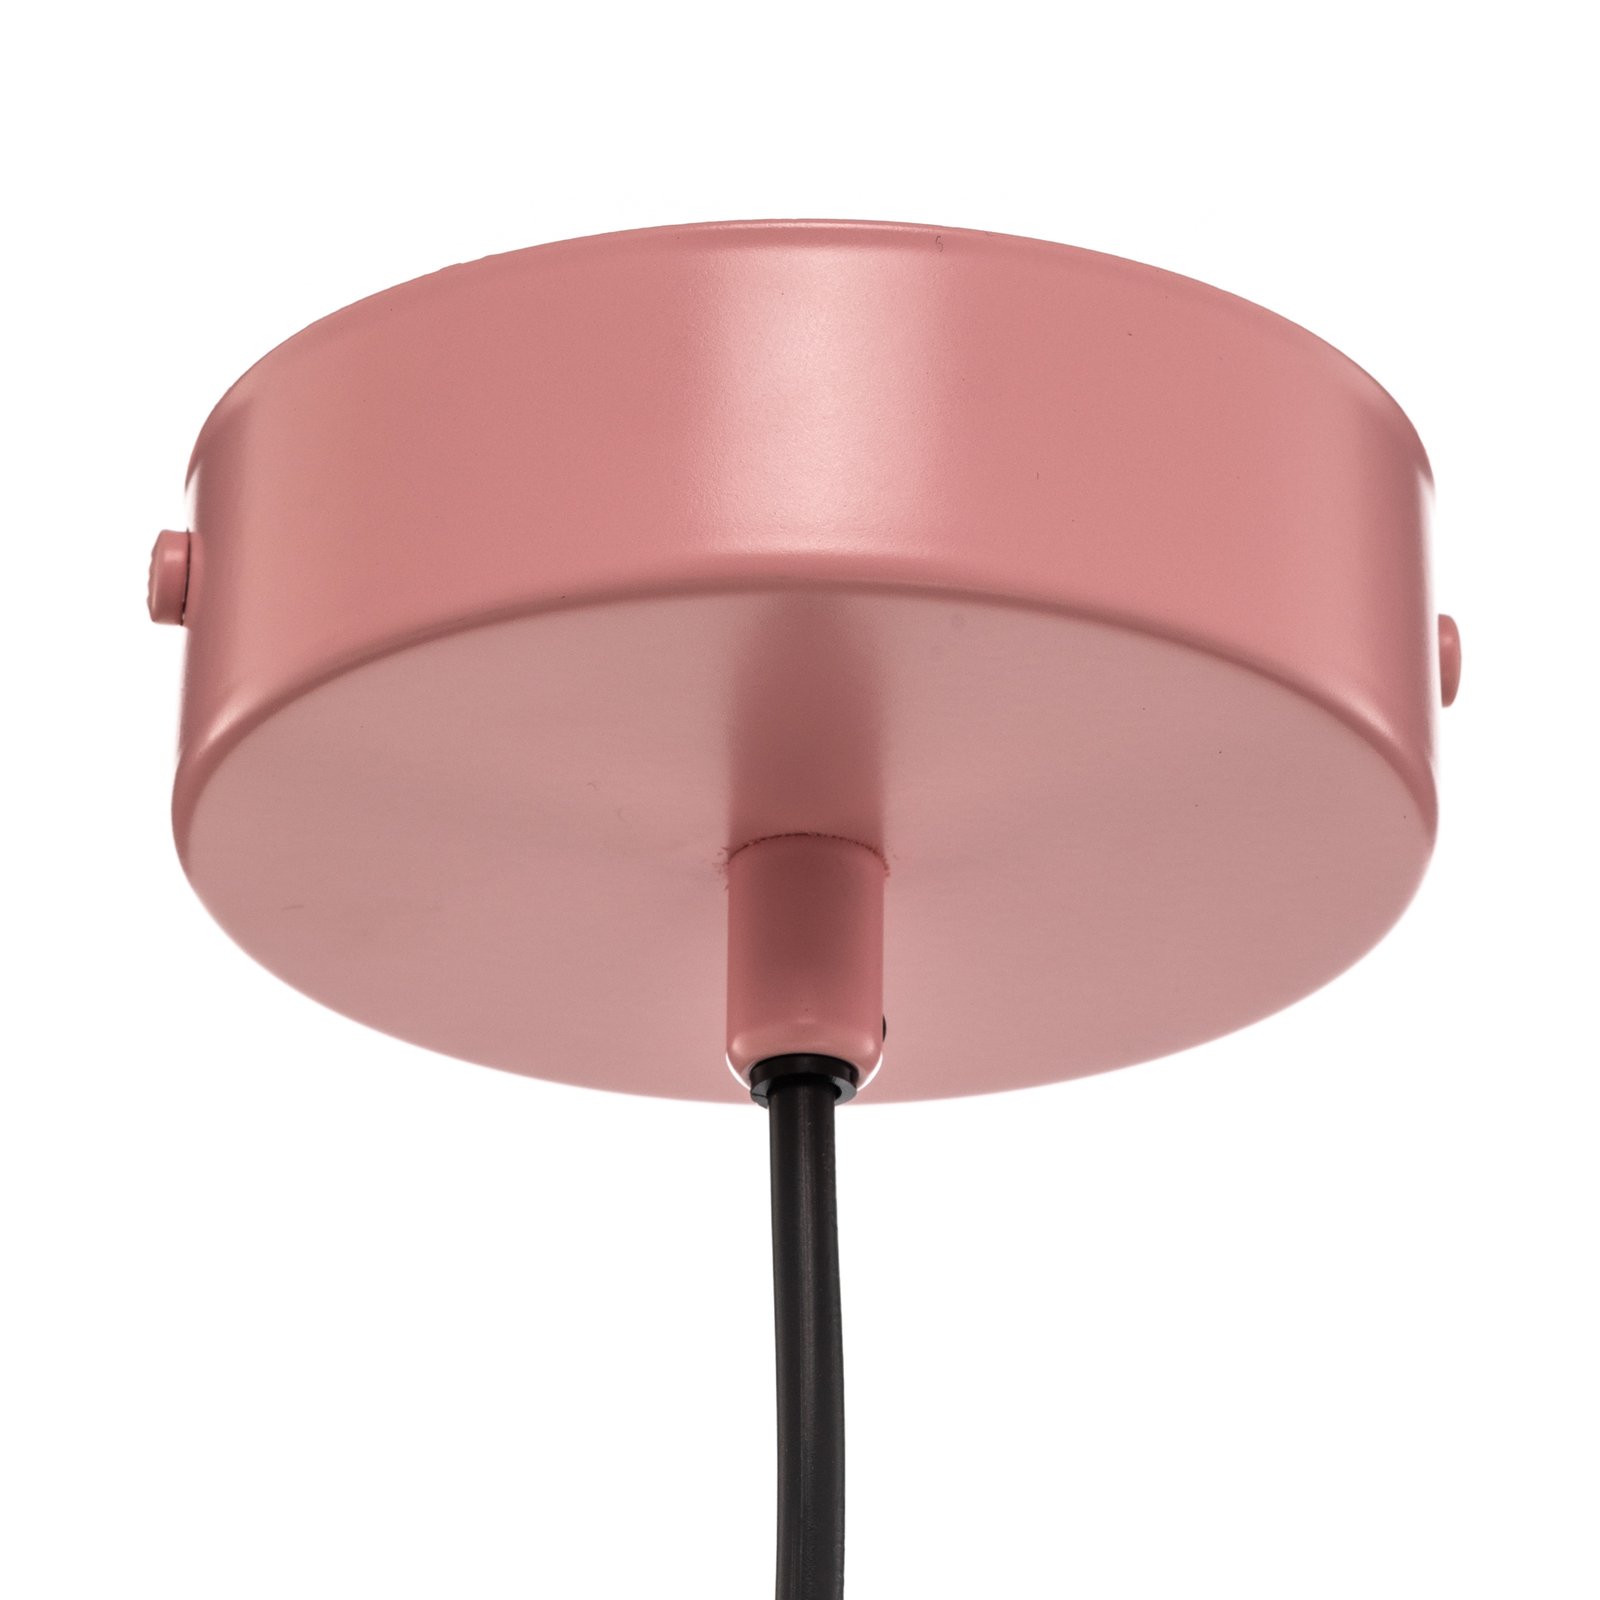 Samba hanglamp, 1-lamp, roze/wit